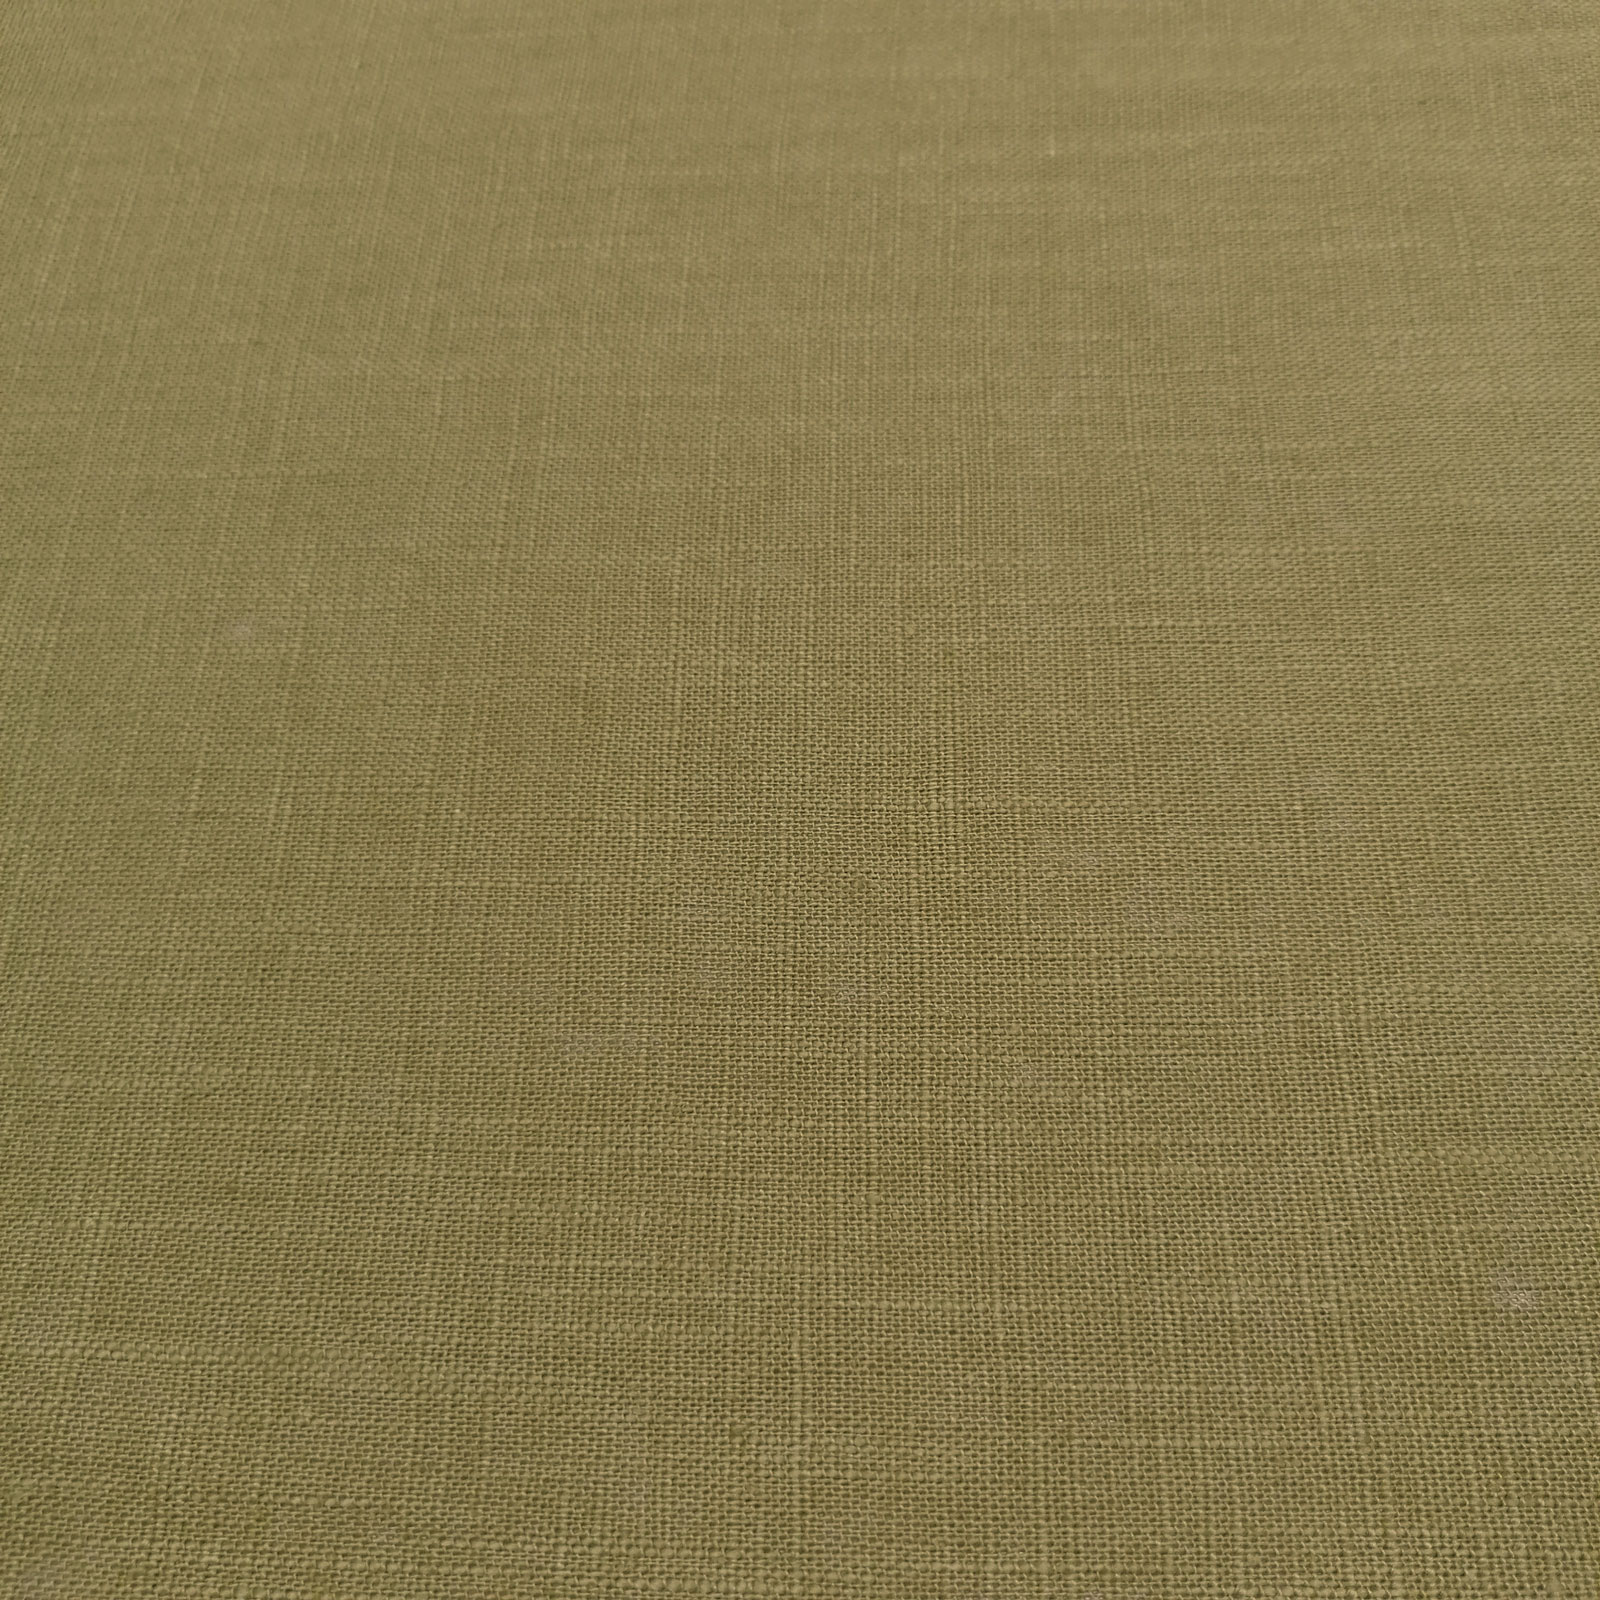 Öko Tex® Linen Marian, 100% lino puro - color especial musgo claro